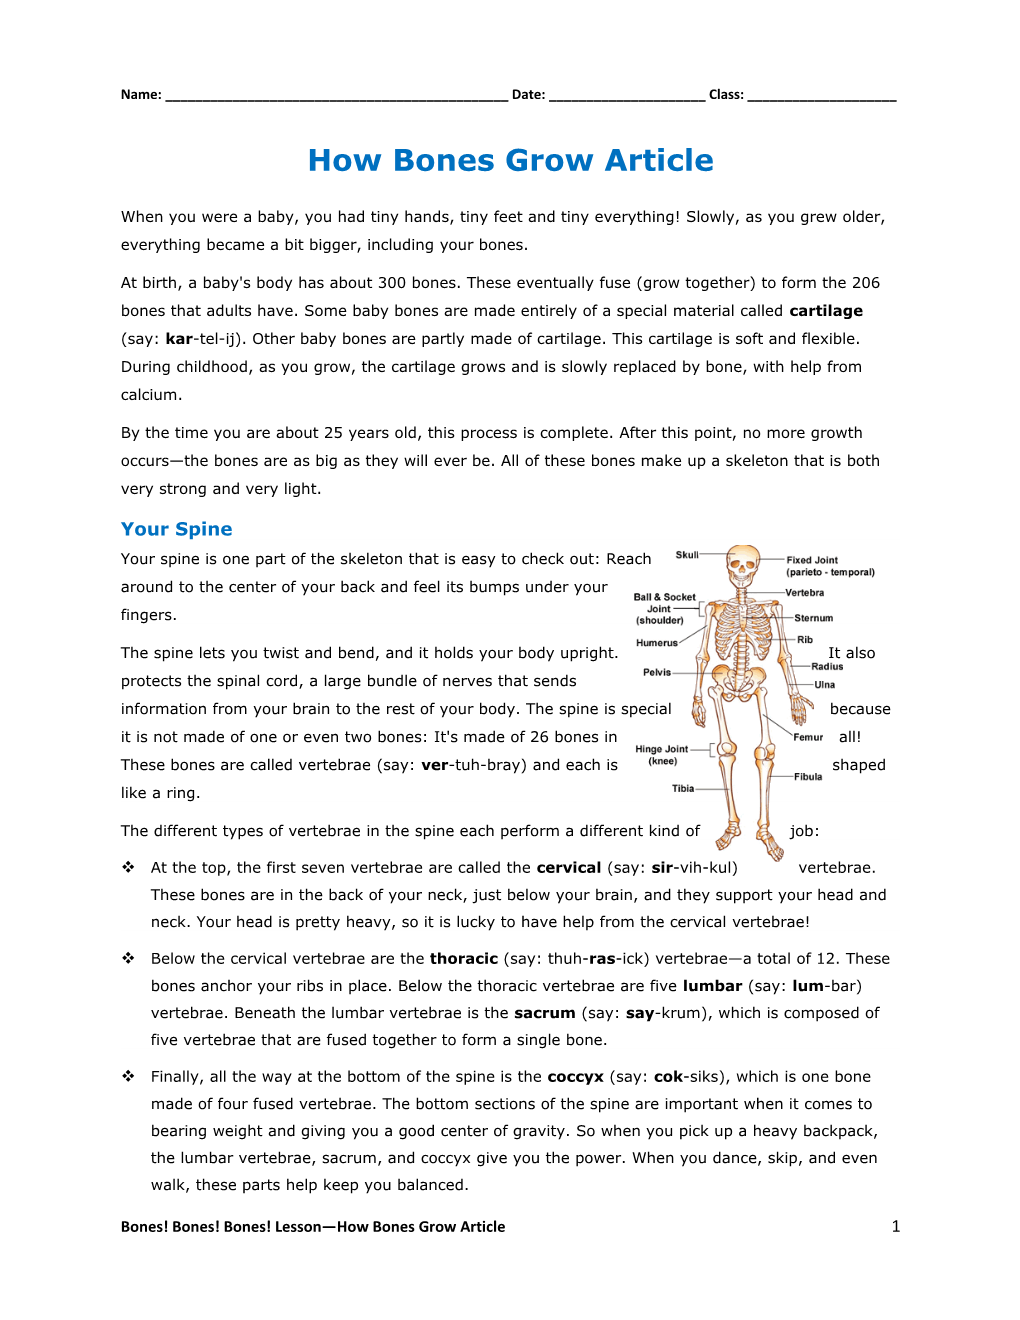 How Bones Grow Article